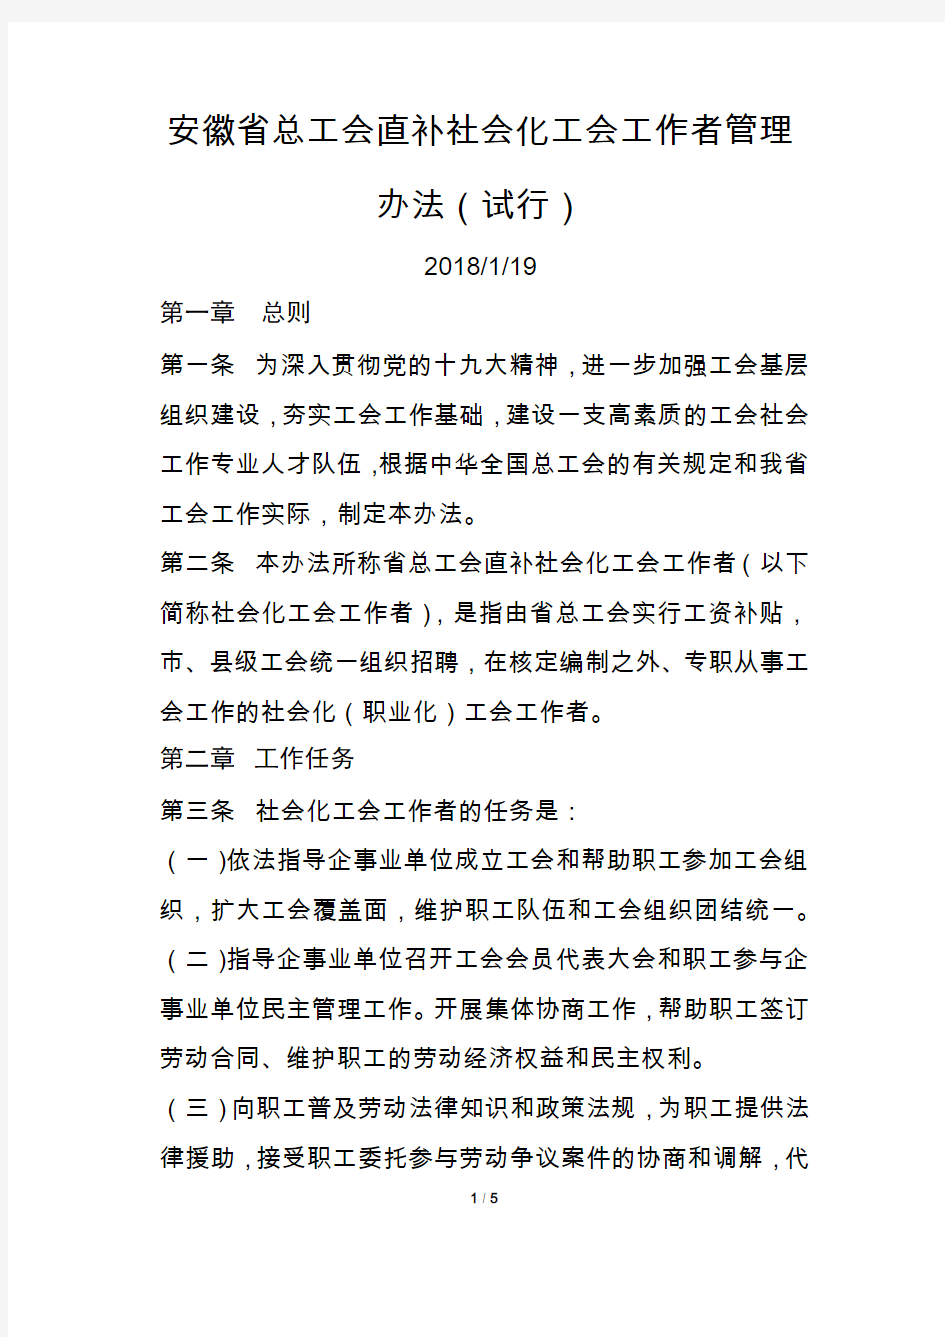 安徽省总工会直补社会化工会工作者管理办法(试行)-2018年